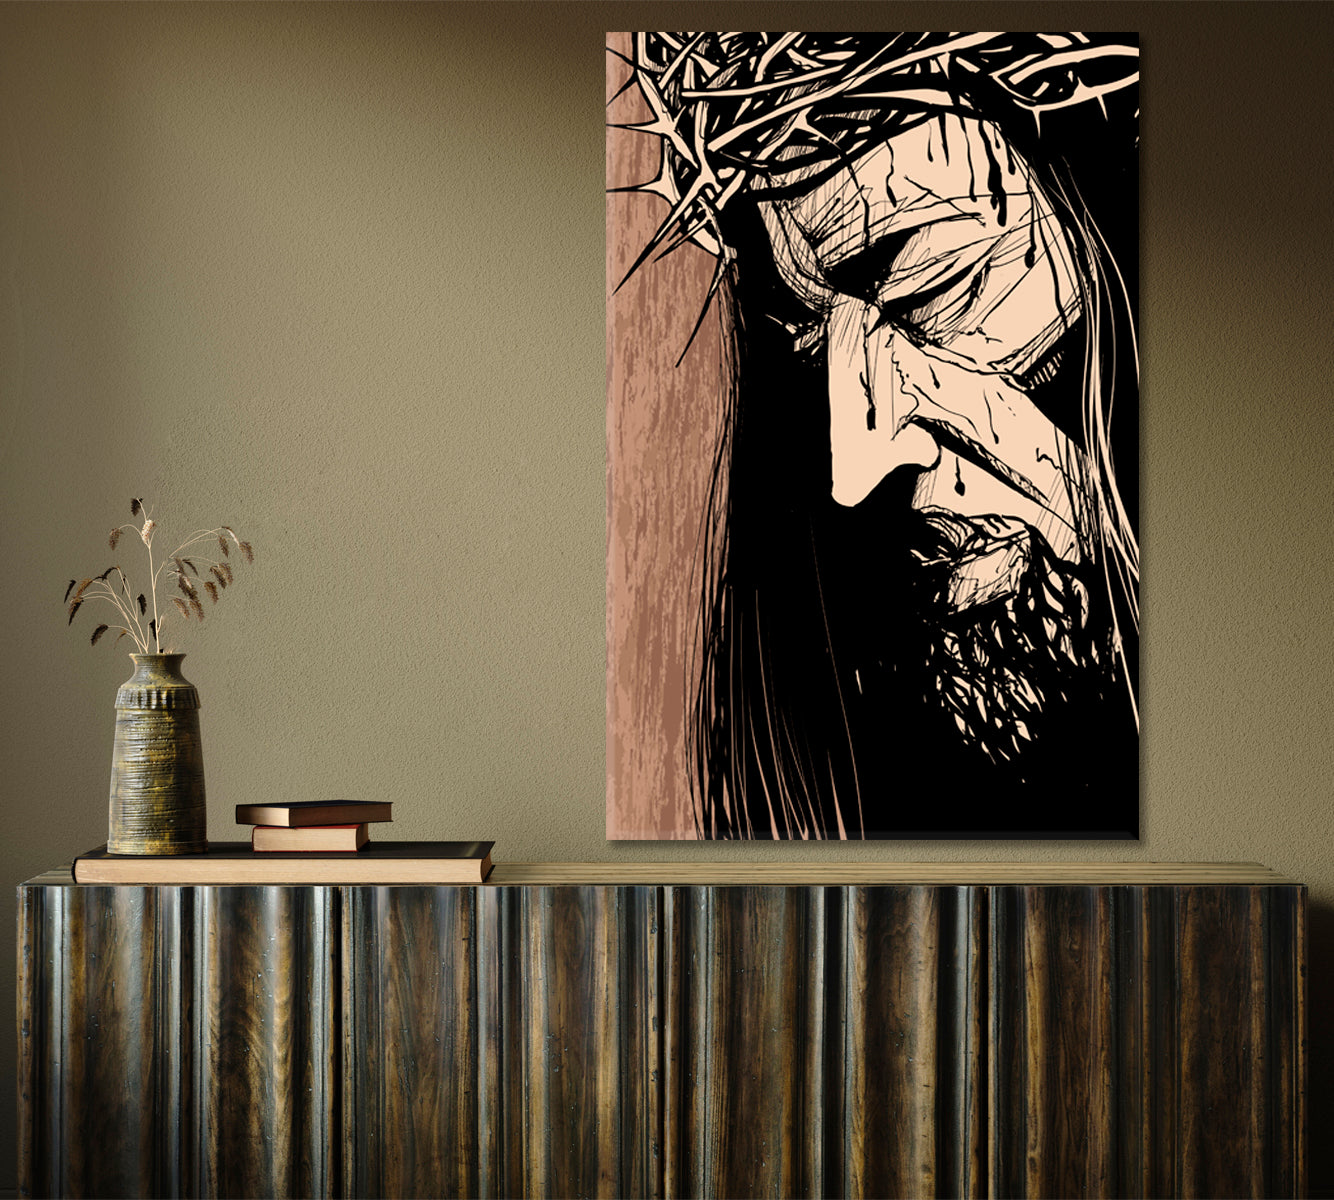 CHRIST'S FACE Jesus Christ Portrait Christian Religion Symbol - V Religious Modern Art Artesty   